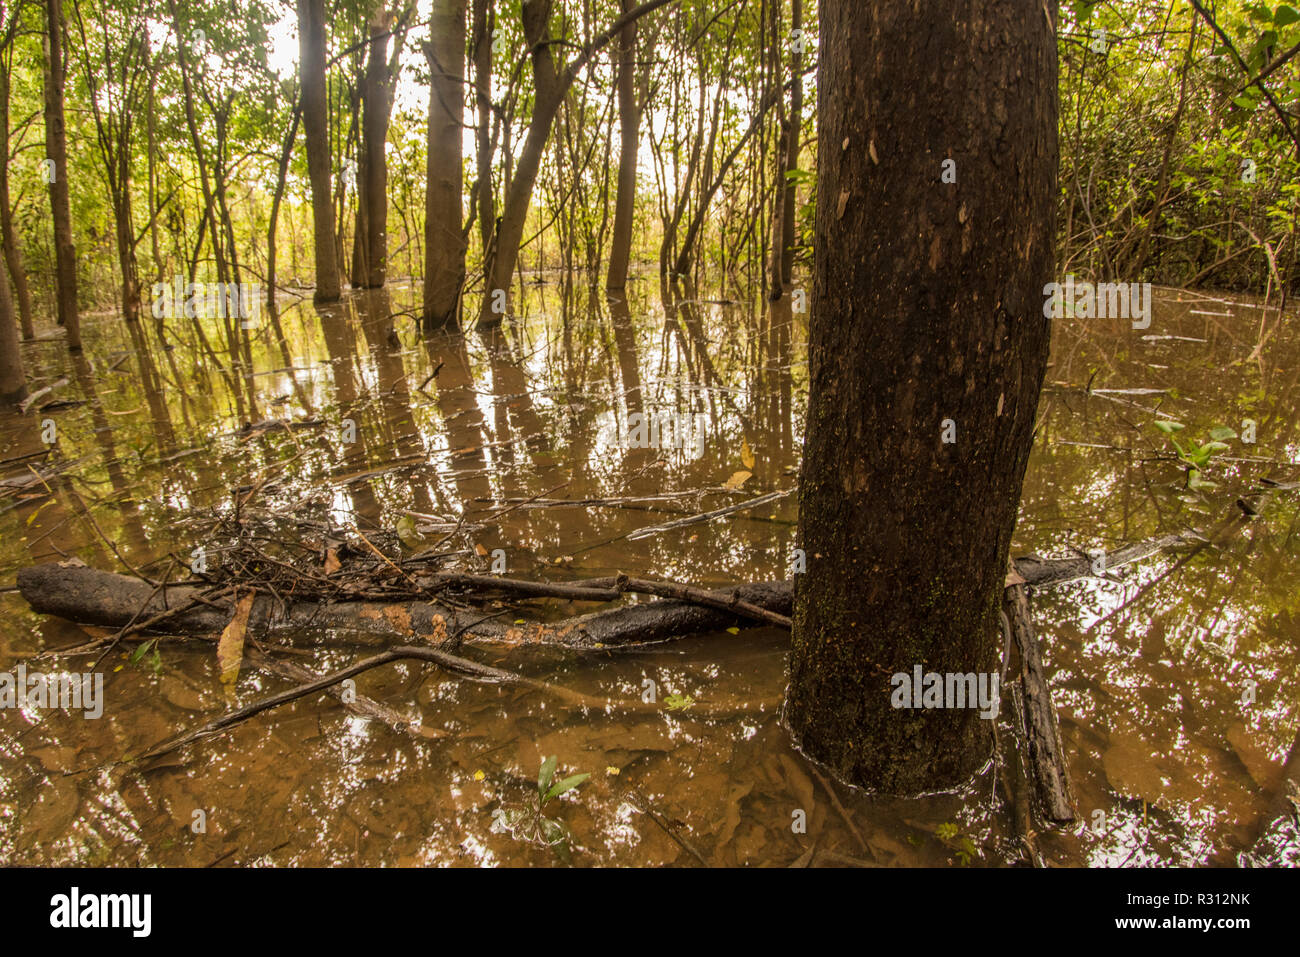 Während der Regenzeit den Amazonas Überläufe seine Banken und Überschwemmungen in der Nähe Wald wie hier im Süden Kolumbiens. Stockfoto